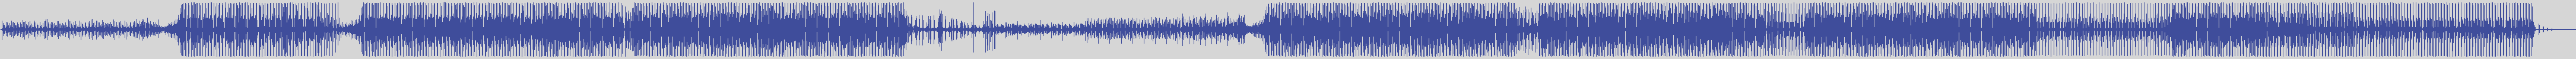 atomic_recordings [AR011] Paul's Boutique - Violet [Paolo Martini & Paolo Cavicchioni Remix] audio wave form